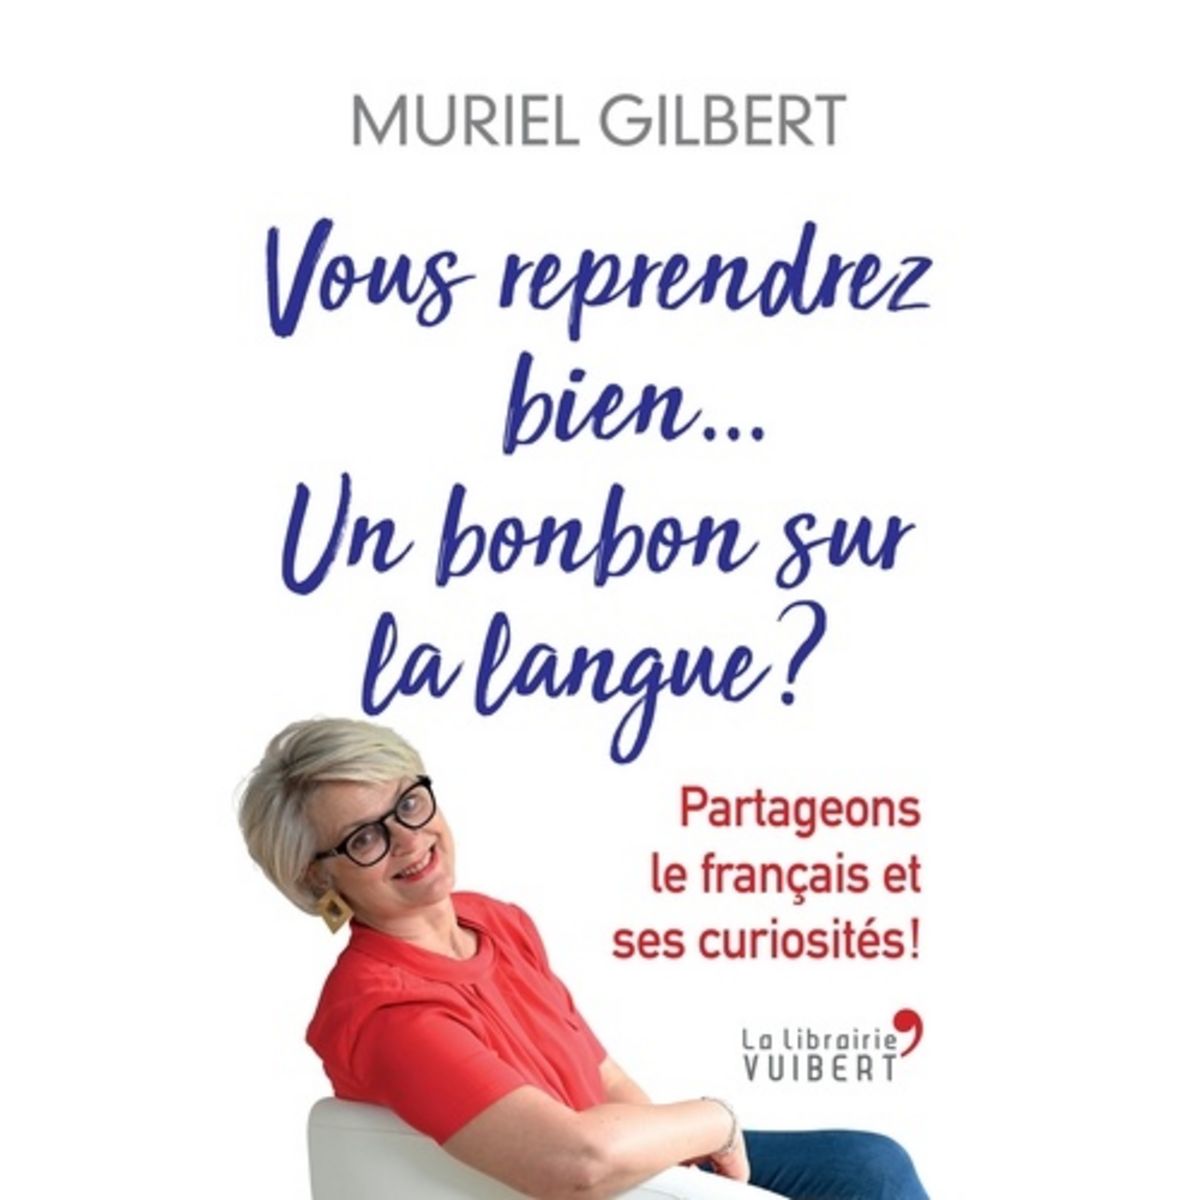  VOUS REPRENDREZ BIEN UN BONBON SUR LA LANGUE ? VOLUME 3, Gilbert Muriel